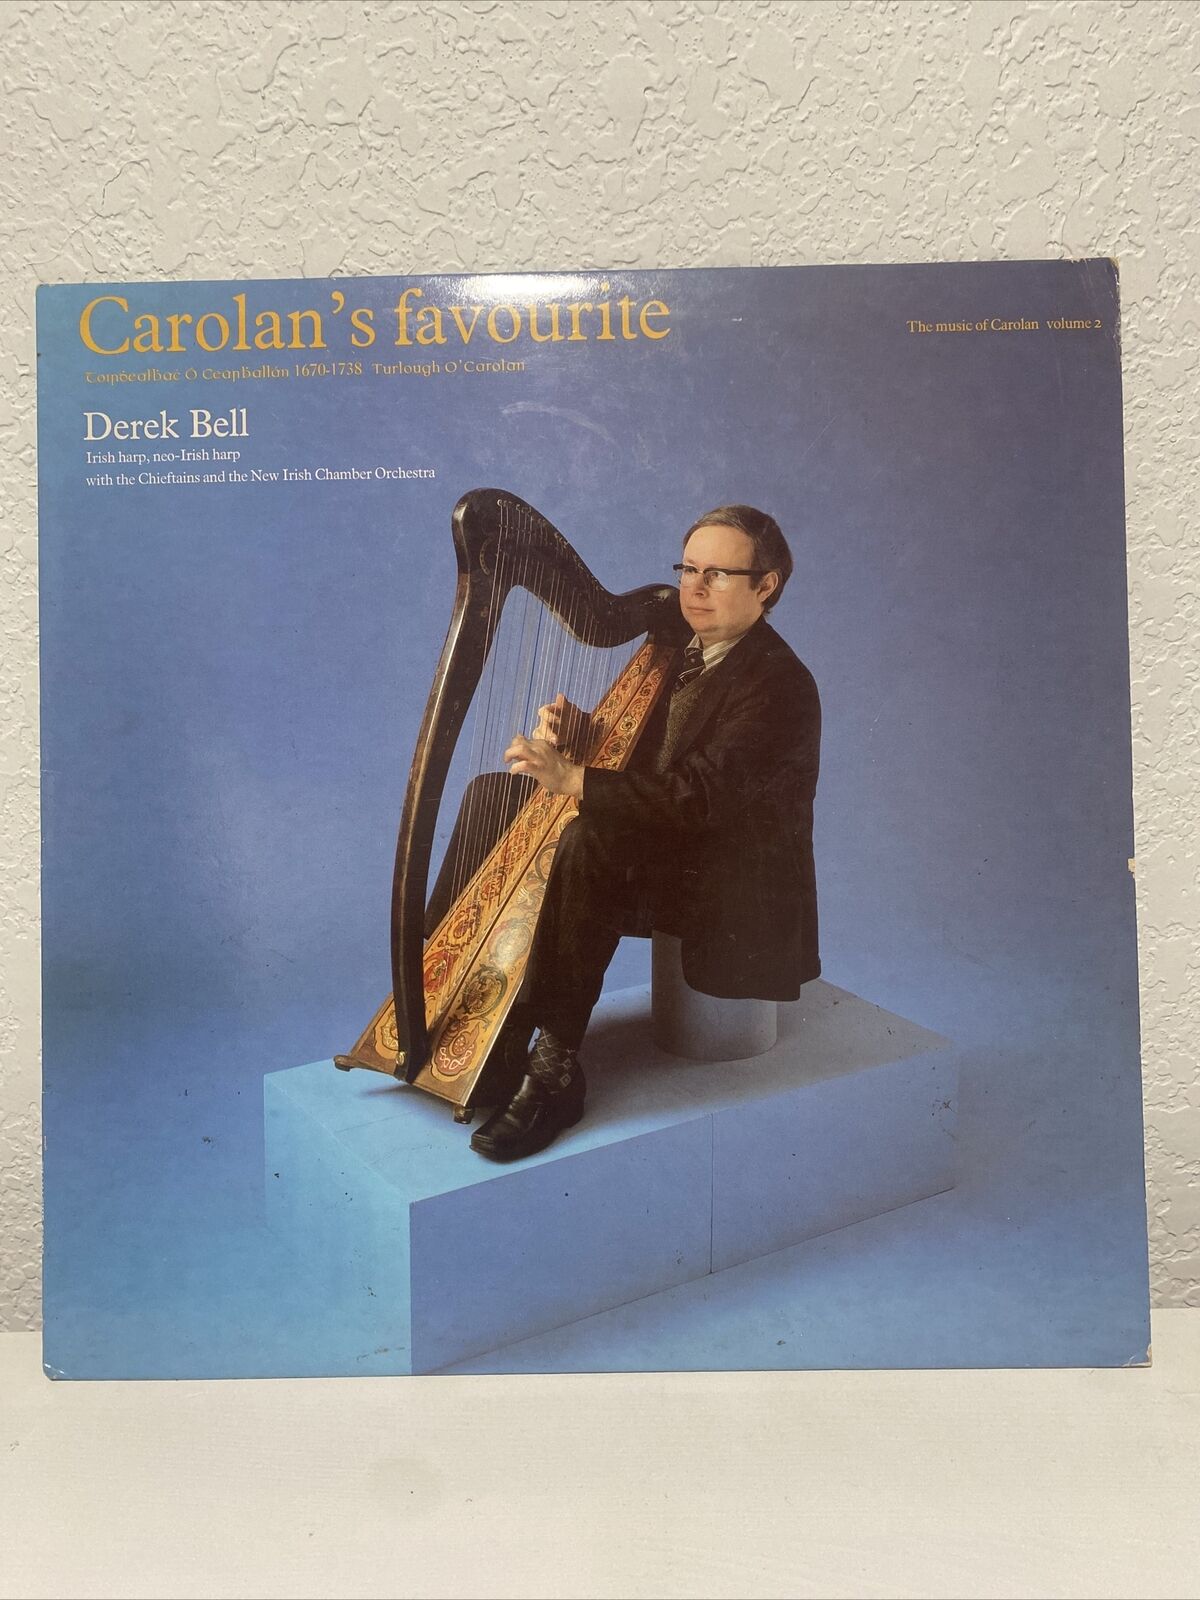 Carolan's Favourite, Vol. 2 DEREK BELL VINYL LP ALBUM 1981 SHANACHIE RECORDS 